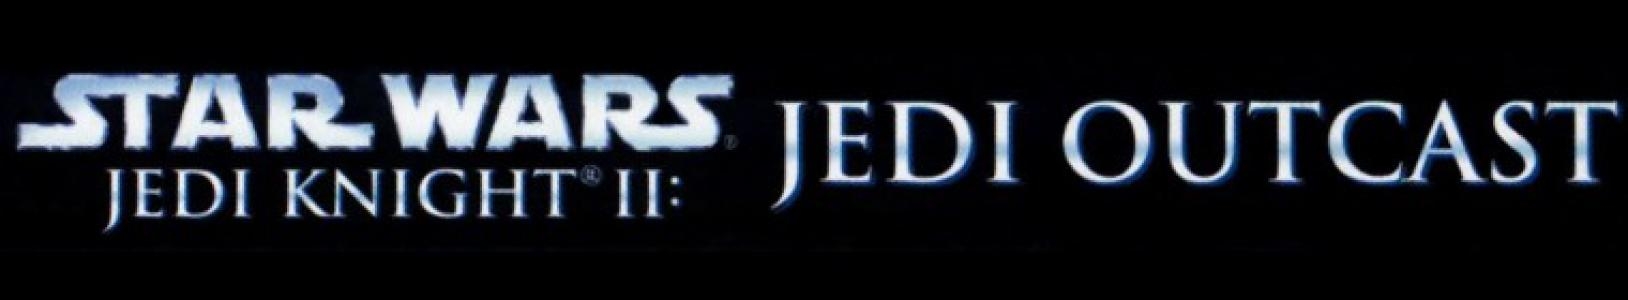 Star Wars Jedi Knight II: Jedi Outcast banner